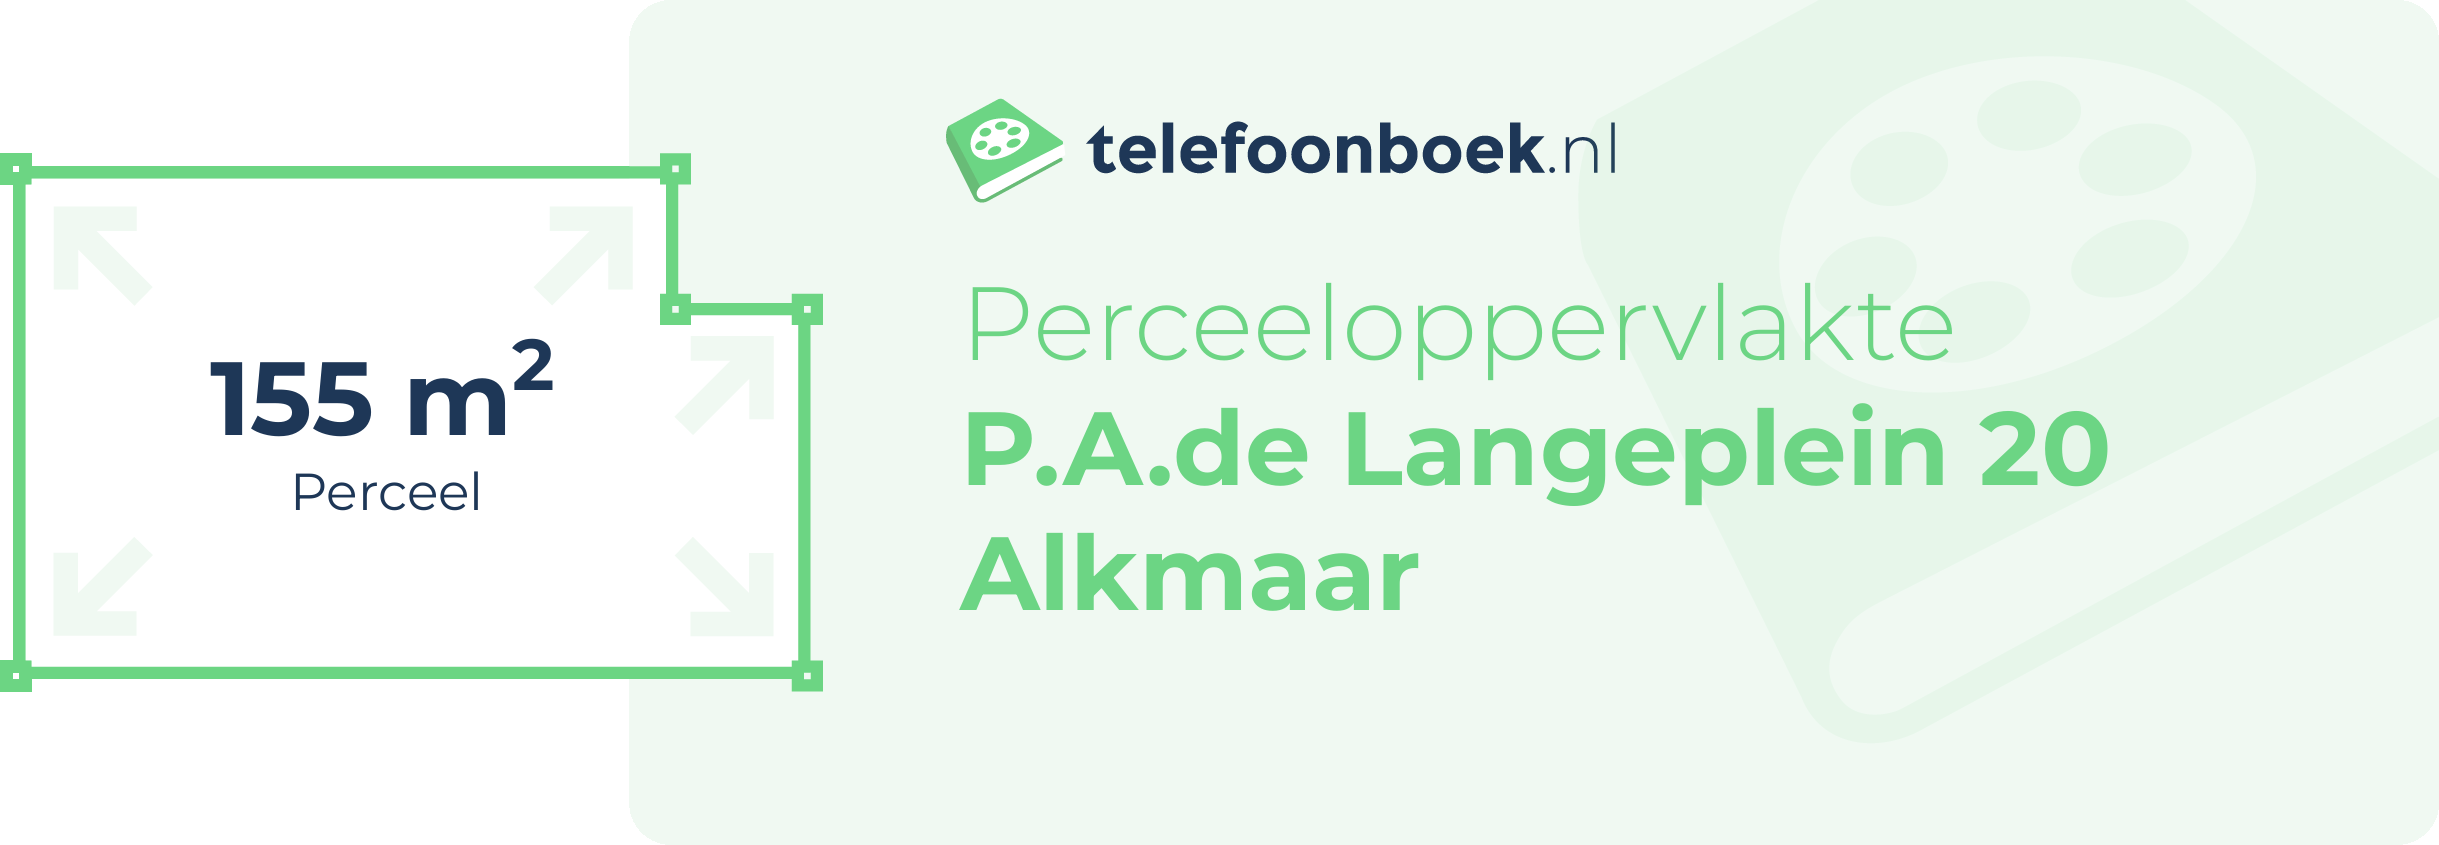 Perceeloppervlakte P.A.de Langeplein 20 Alkmaar